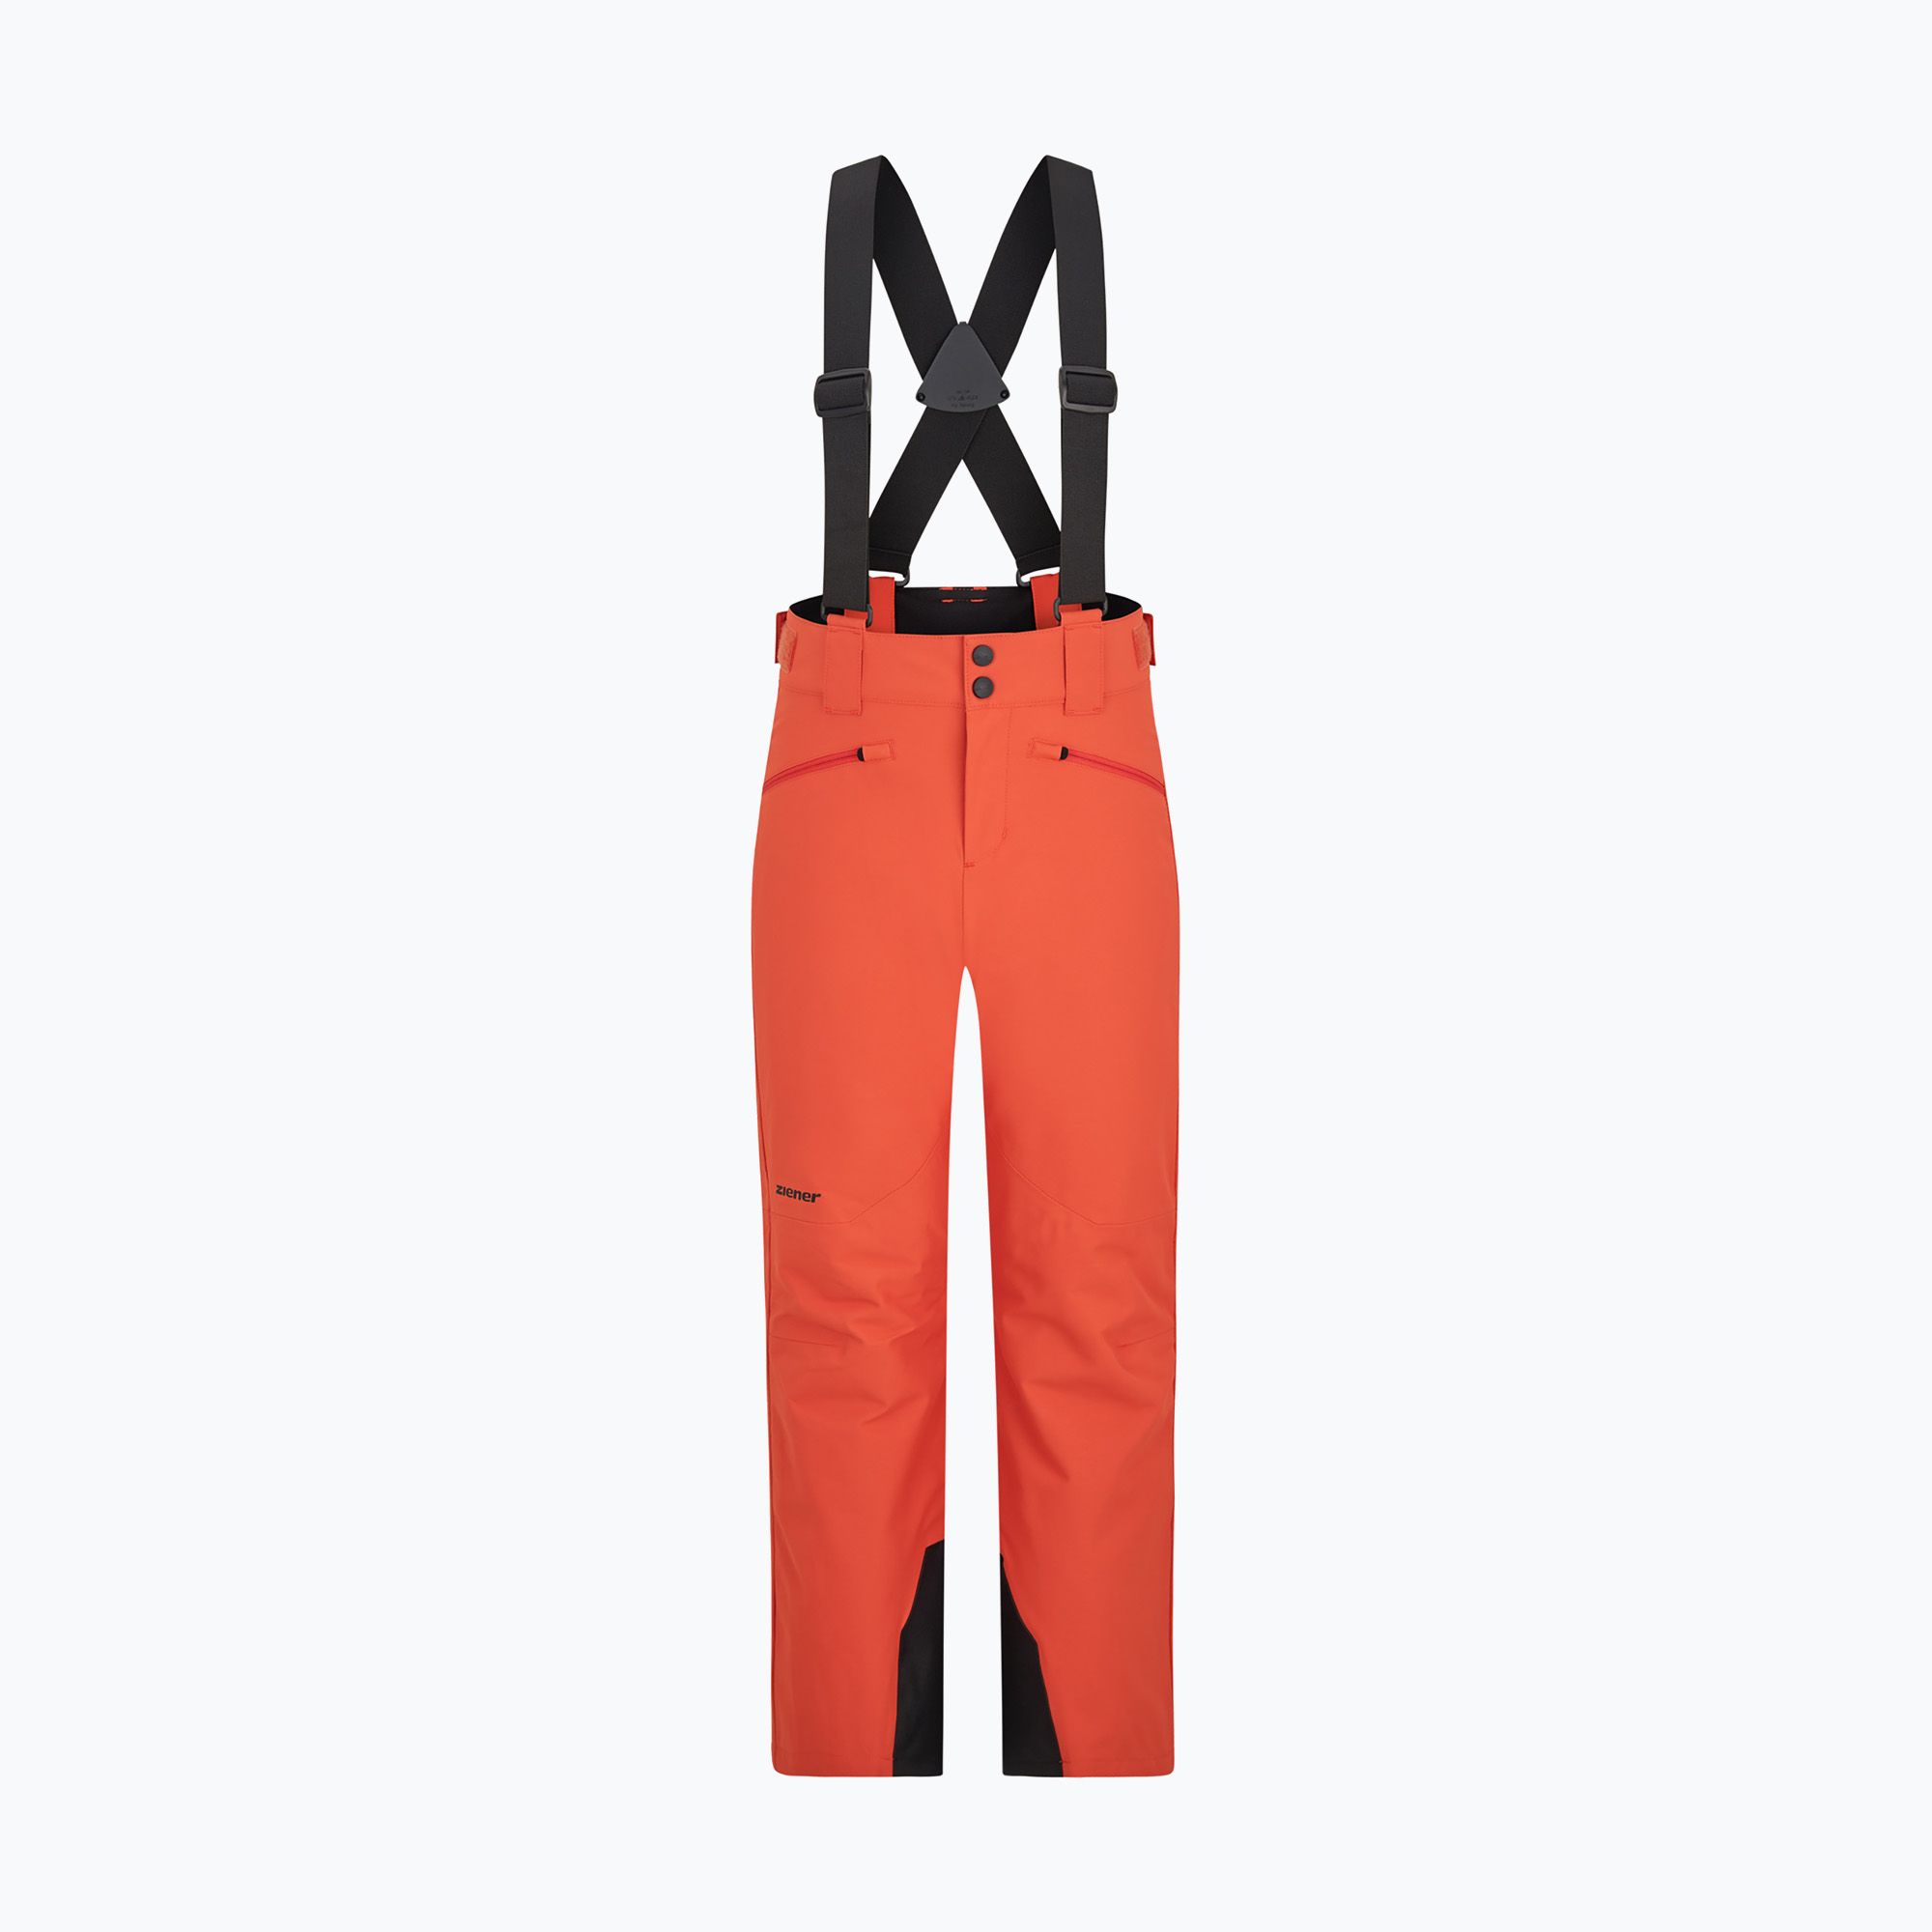 ZIENER Axi children\'s ski trousers burnt orange